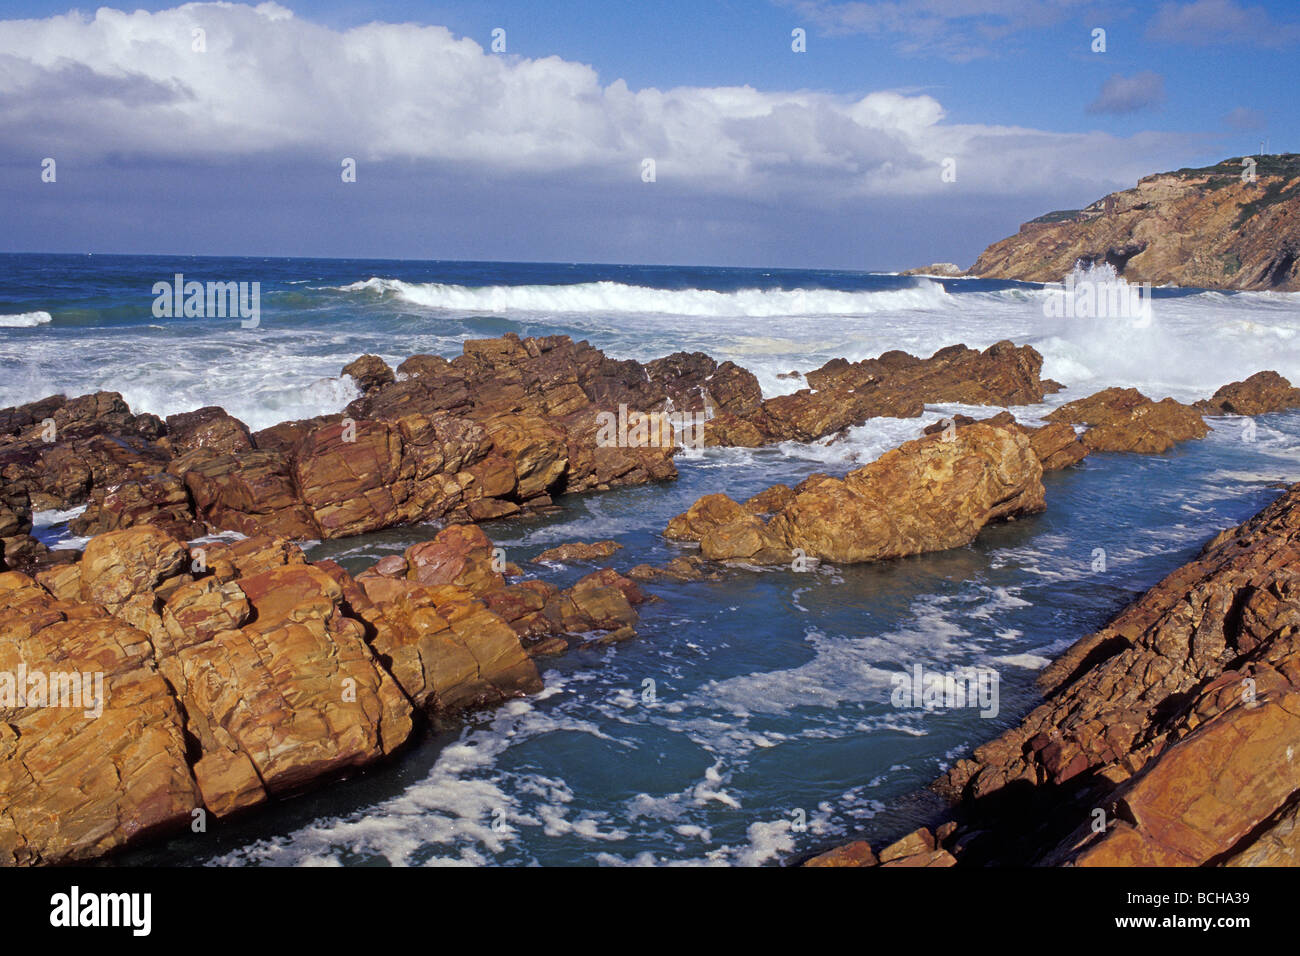 La côte rugueuse de Mossel Bay, province de Western Cape Afrique du Sud Banque D'Images